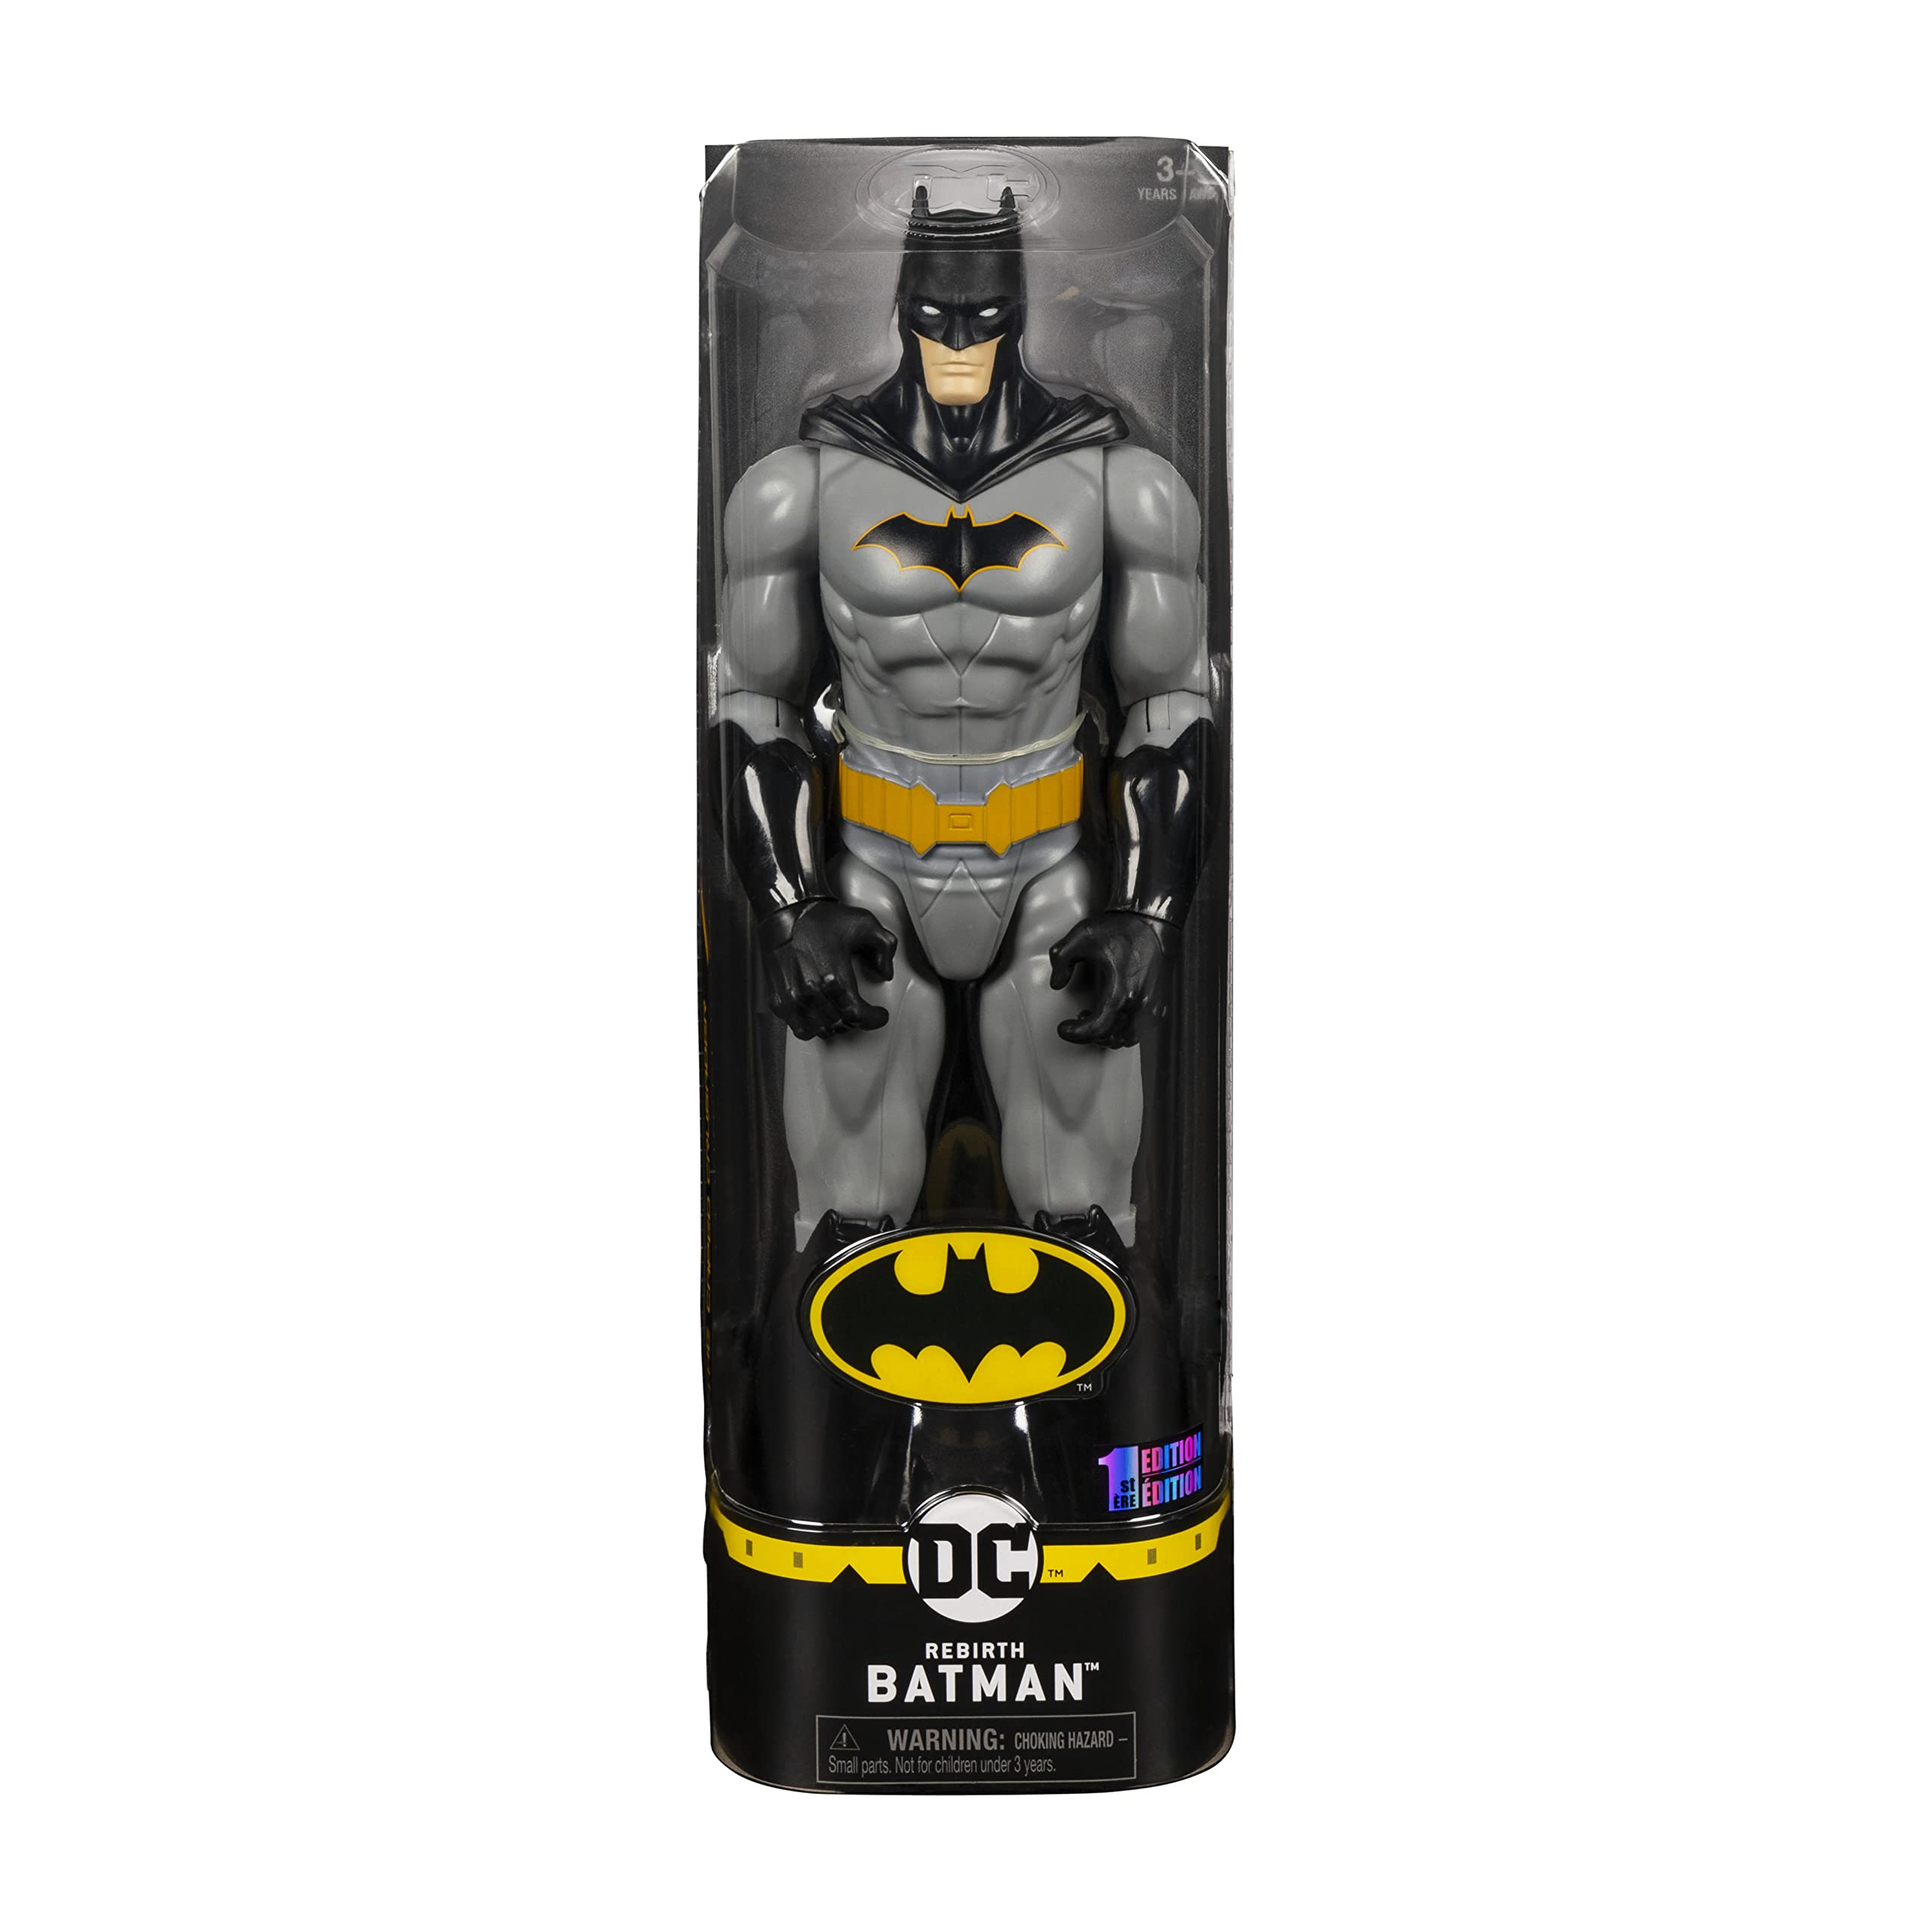 Mua DC Comics Batman 12-inch Rebirth Action Figure, Kids Toys for Boys Aged  3 and up trên Amazon Mỹ chính hãng 2023 | Fado